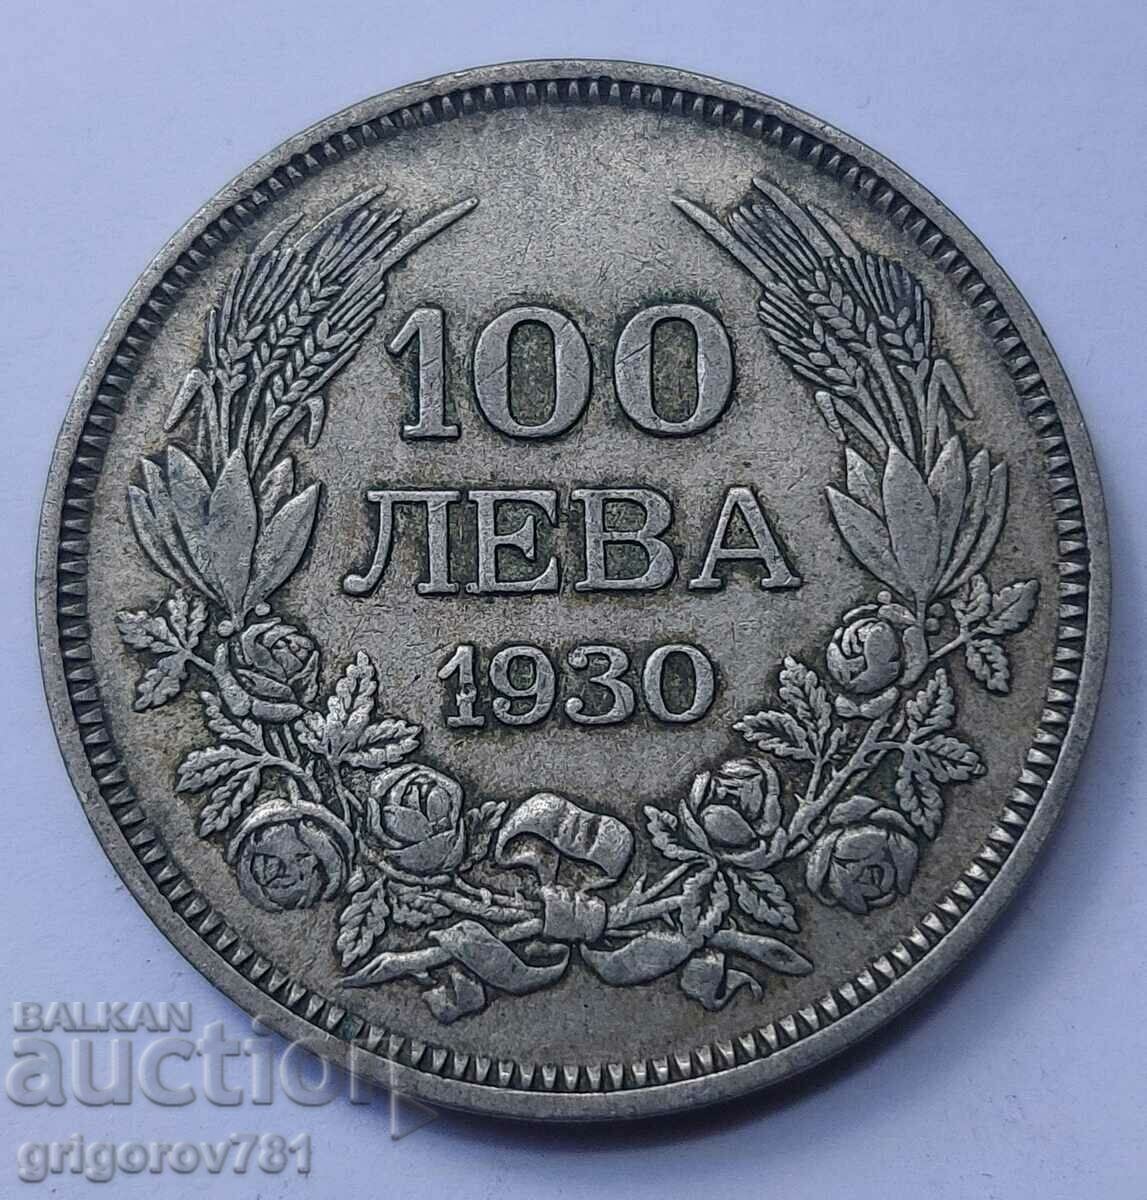 Ασήμι 100 λέβα Βουλγαρία 1930 - ασημένιο νόμισμα #47